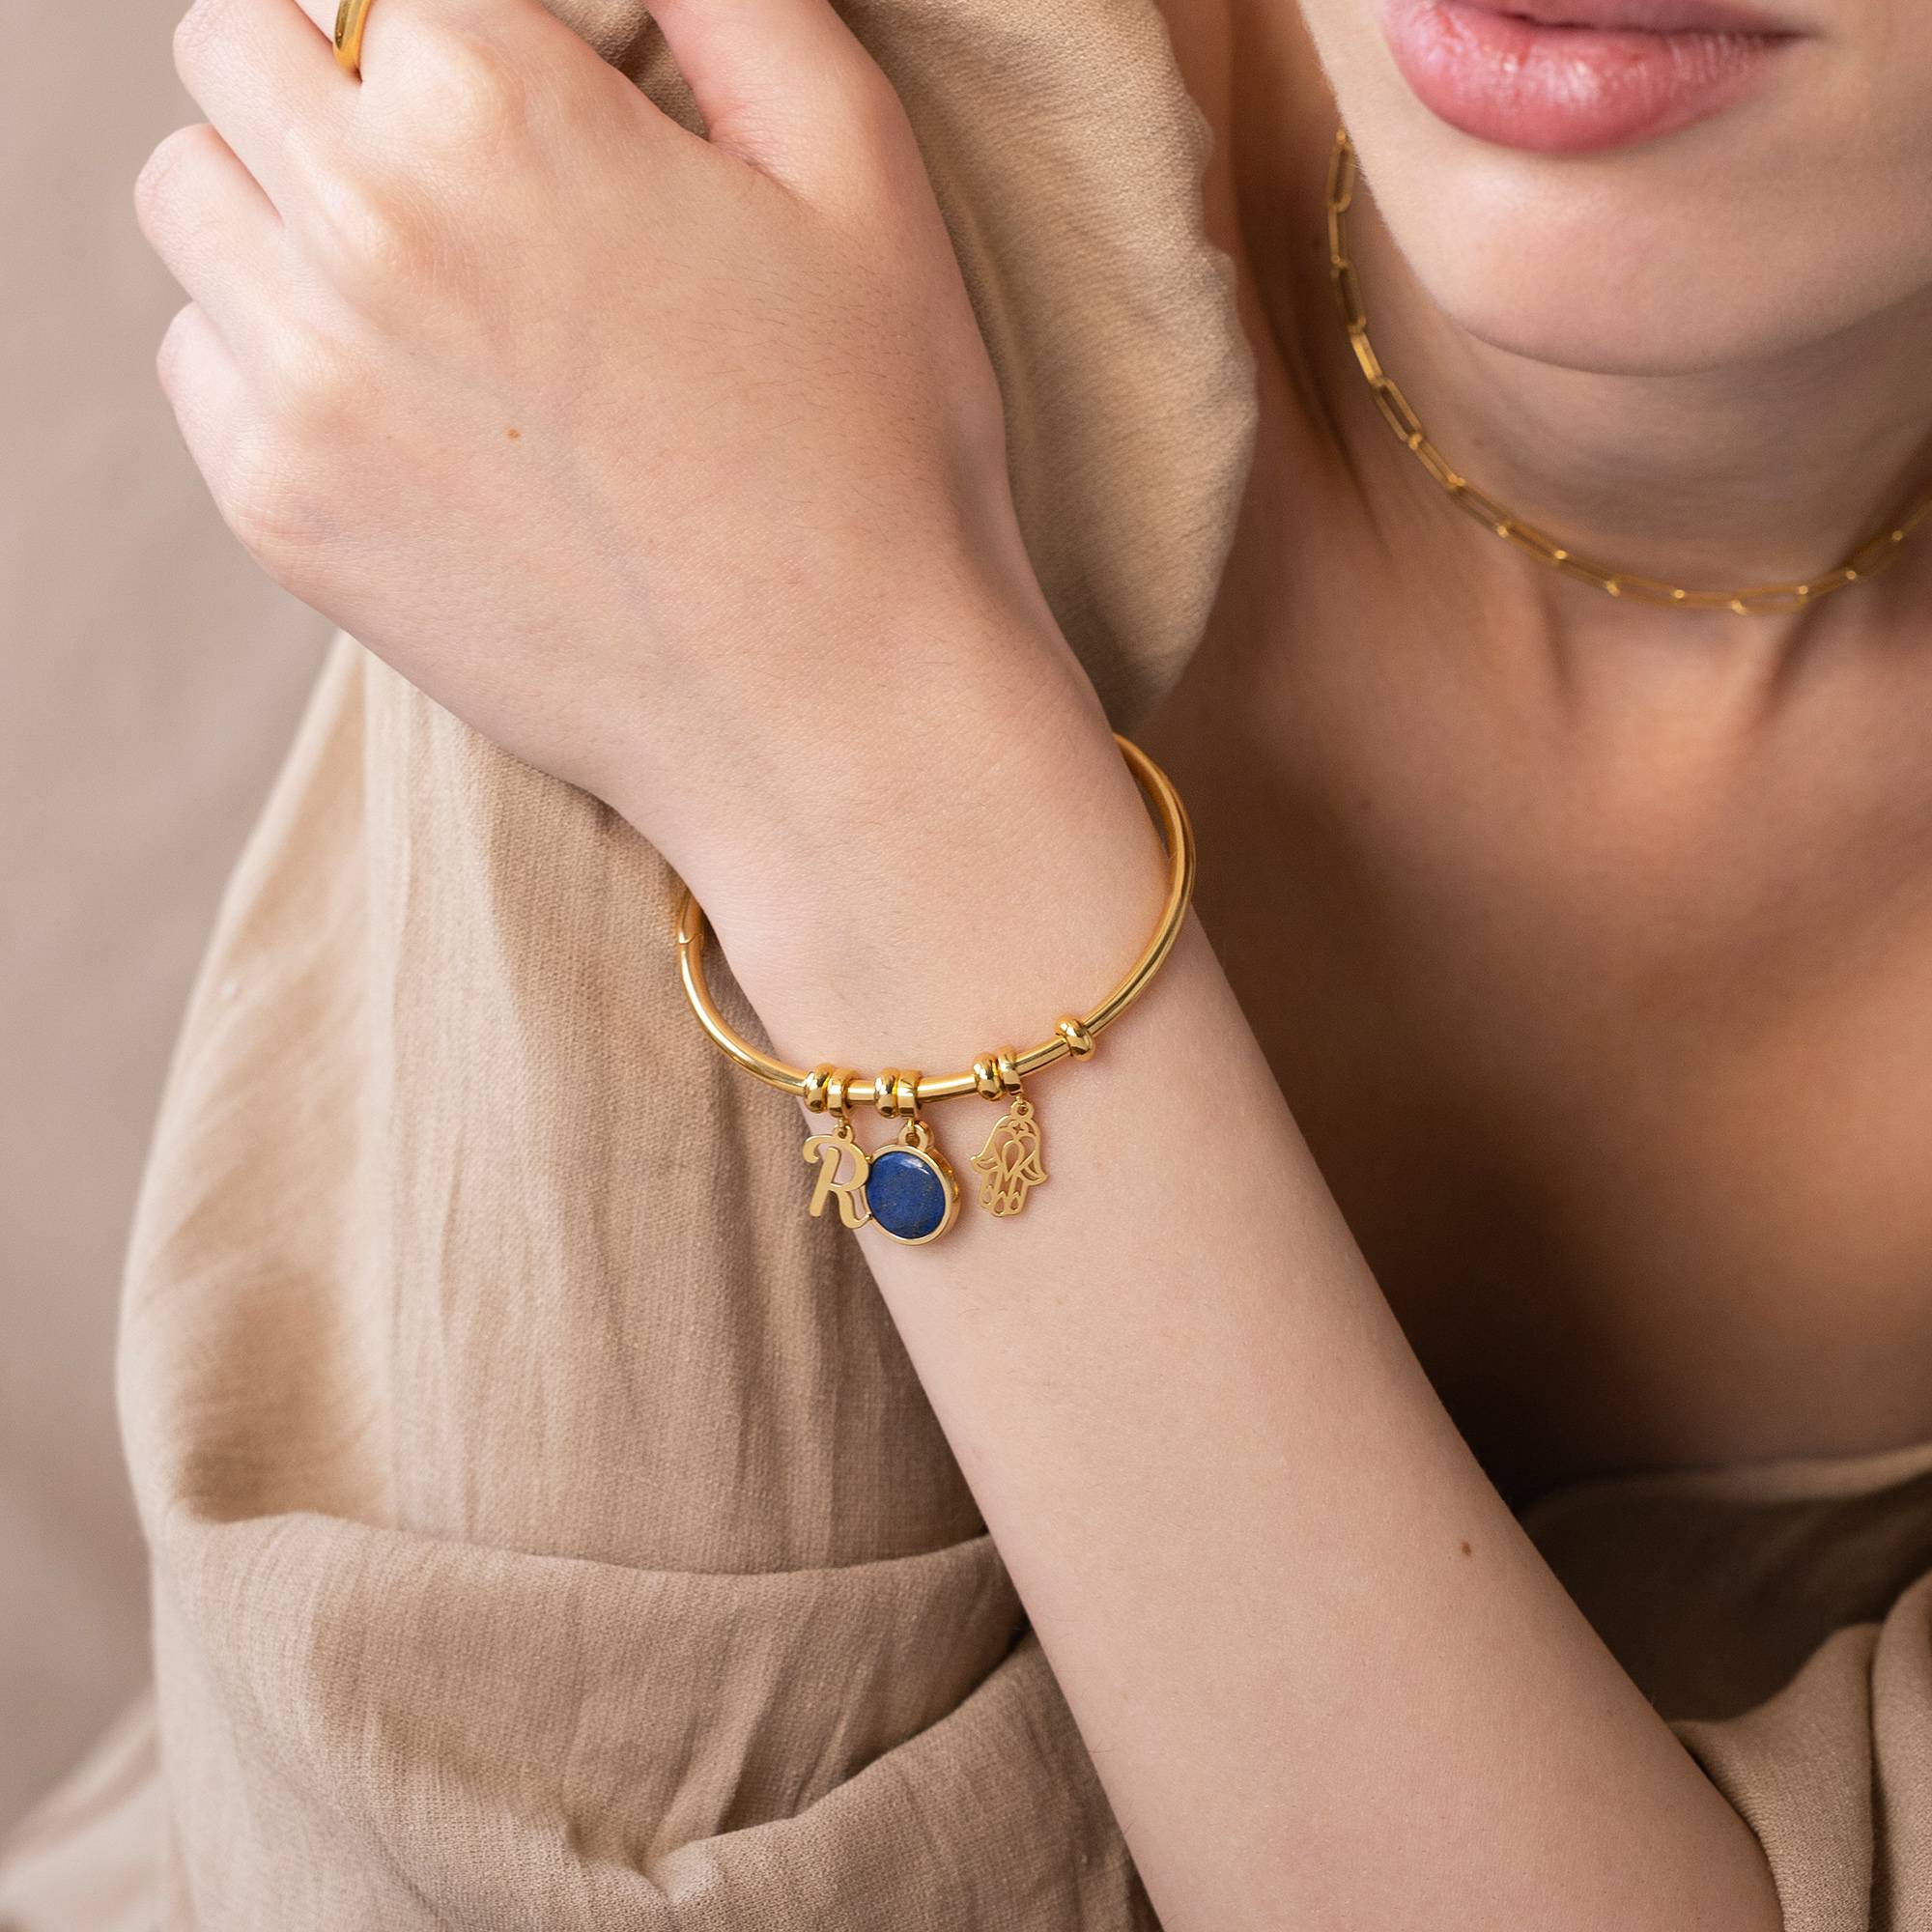 18k Goud Vergulde Symbolische Initiaal Bangle Armband met Halfedelsteen-3 Productfoto